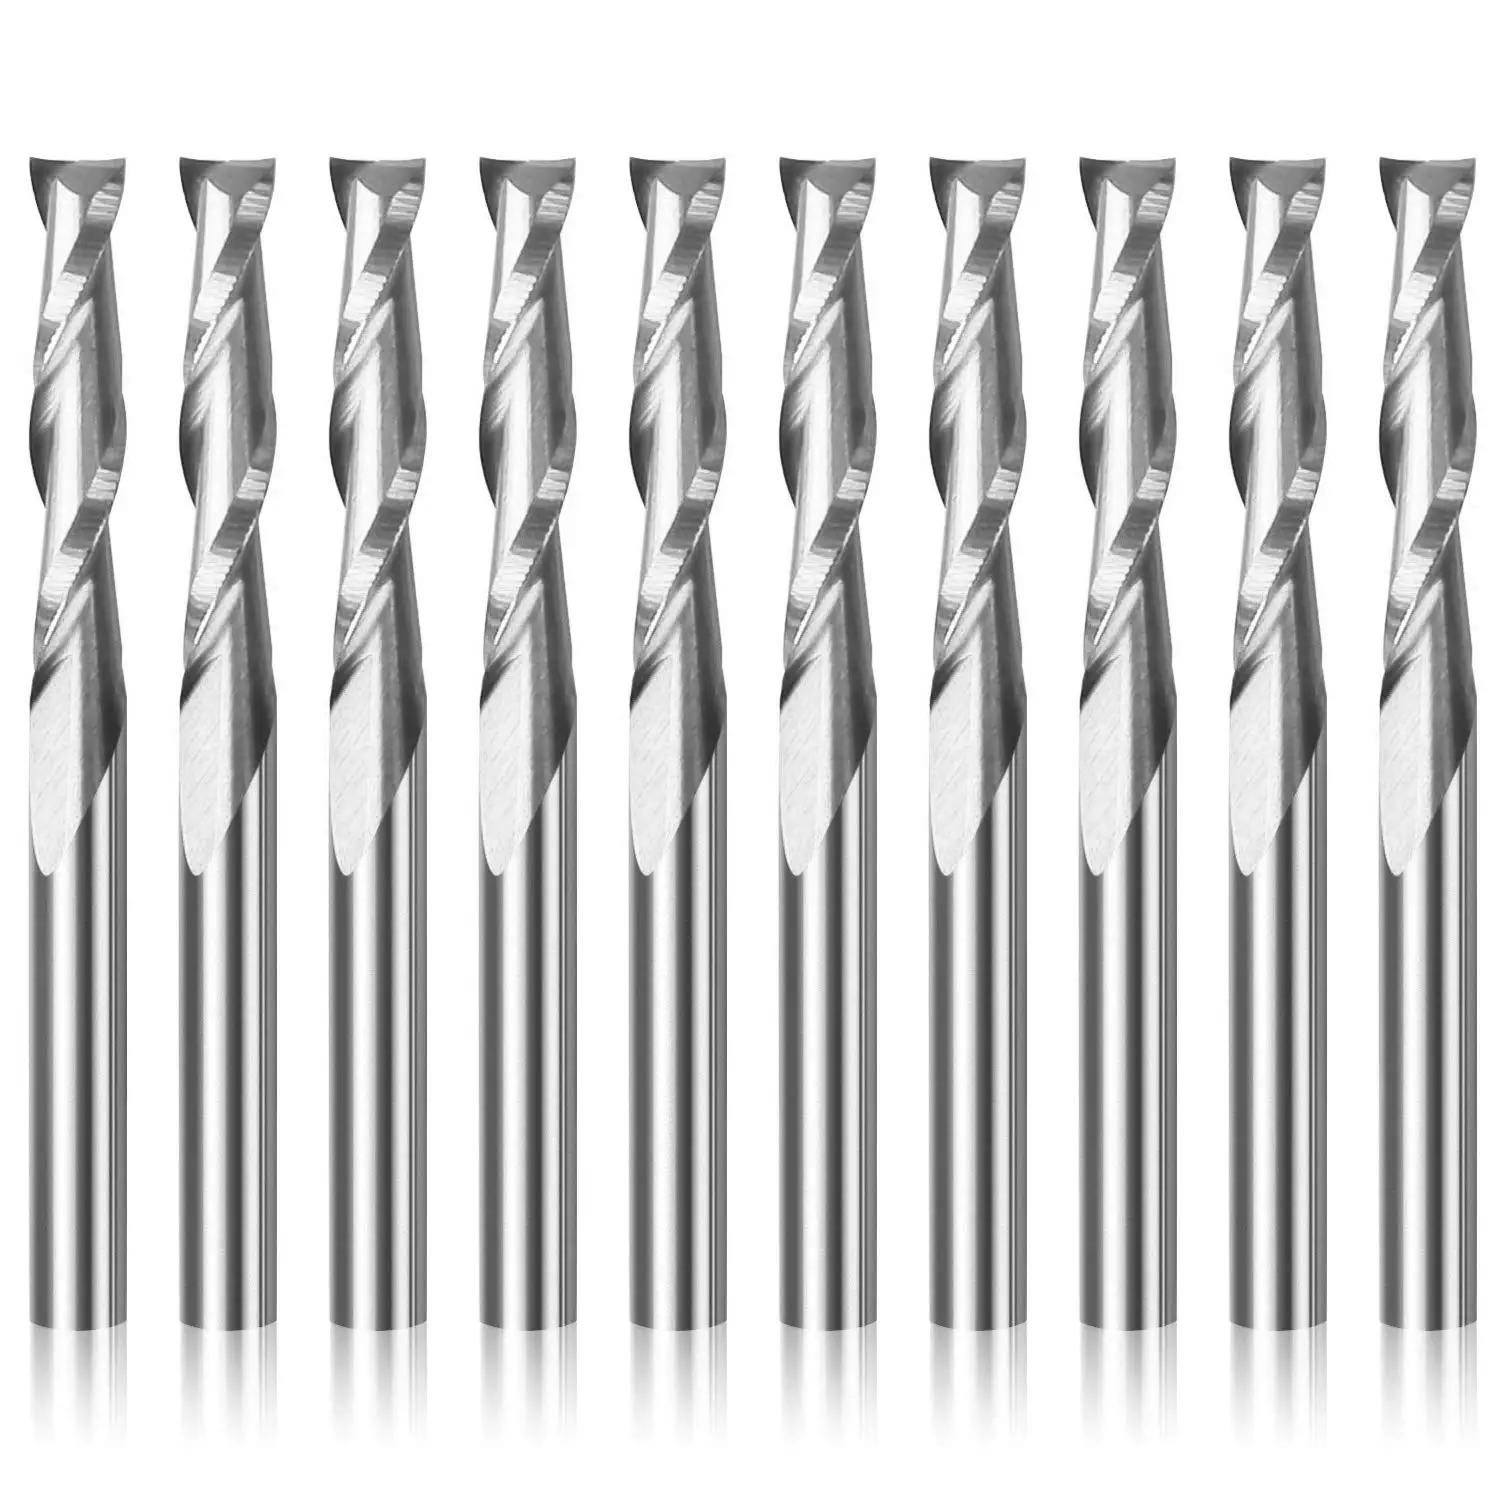 10pcs 1/8 Shank 4-Flutes Carbide Spiral End Mill CNC Router Bit 3.175*15mm Blade 